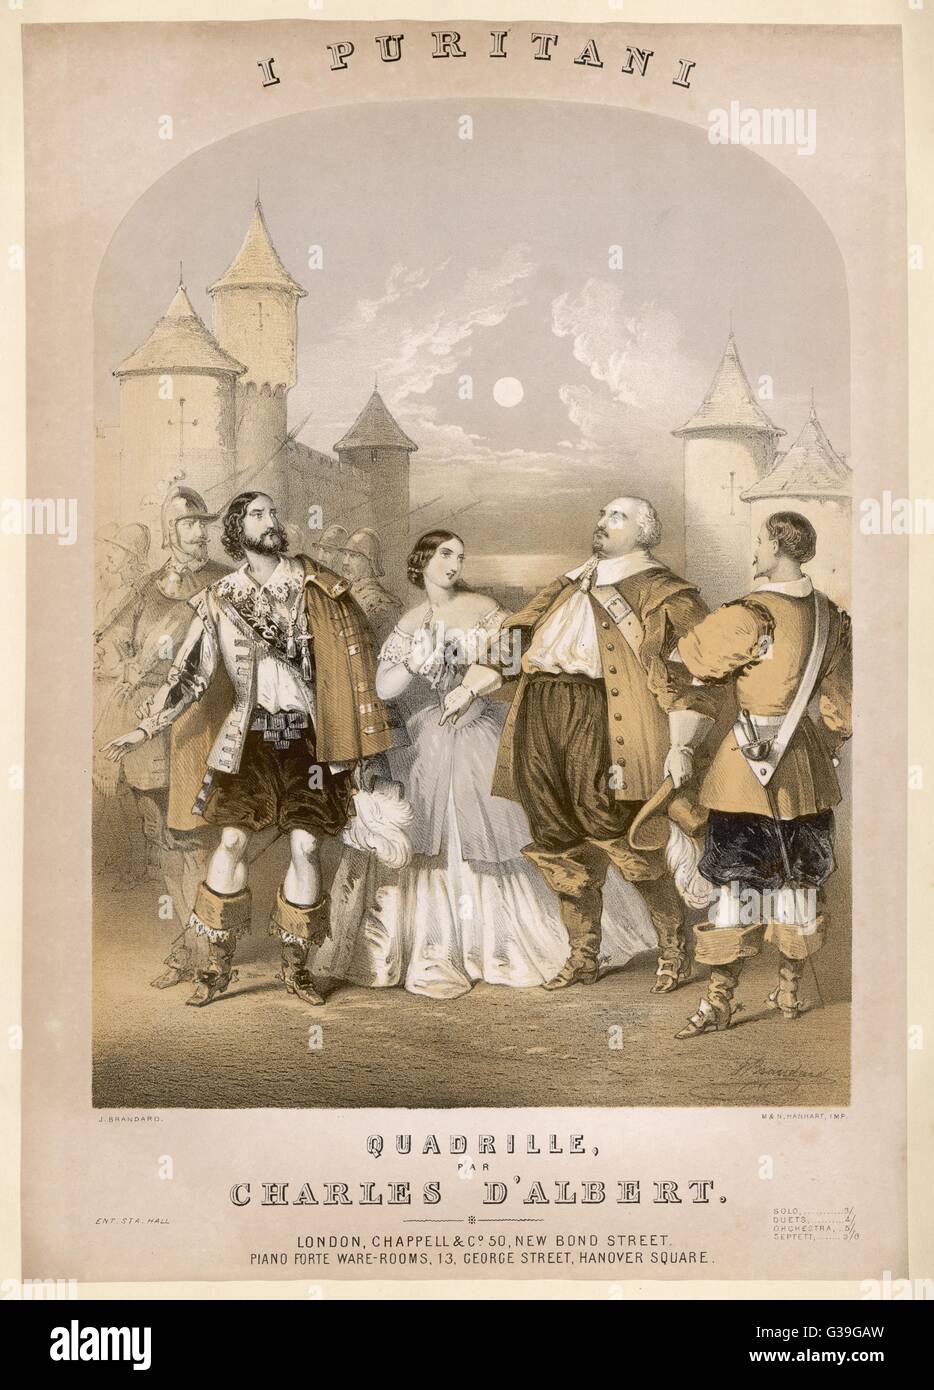 Elvira liebt ein Kavalier, aber ihr puritanischen Vater beabsichtigt sie, ein Befürworter der Cromwell - Mi, so dass sie, natürlich wahnsinnig, aber endlich wieder auf ihre Sinne und ihr wahres Datum lieben: um 1860 Stockfoto